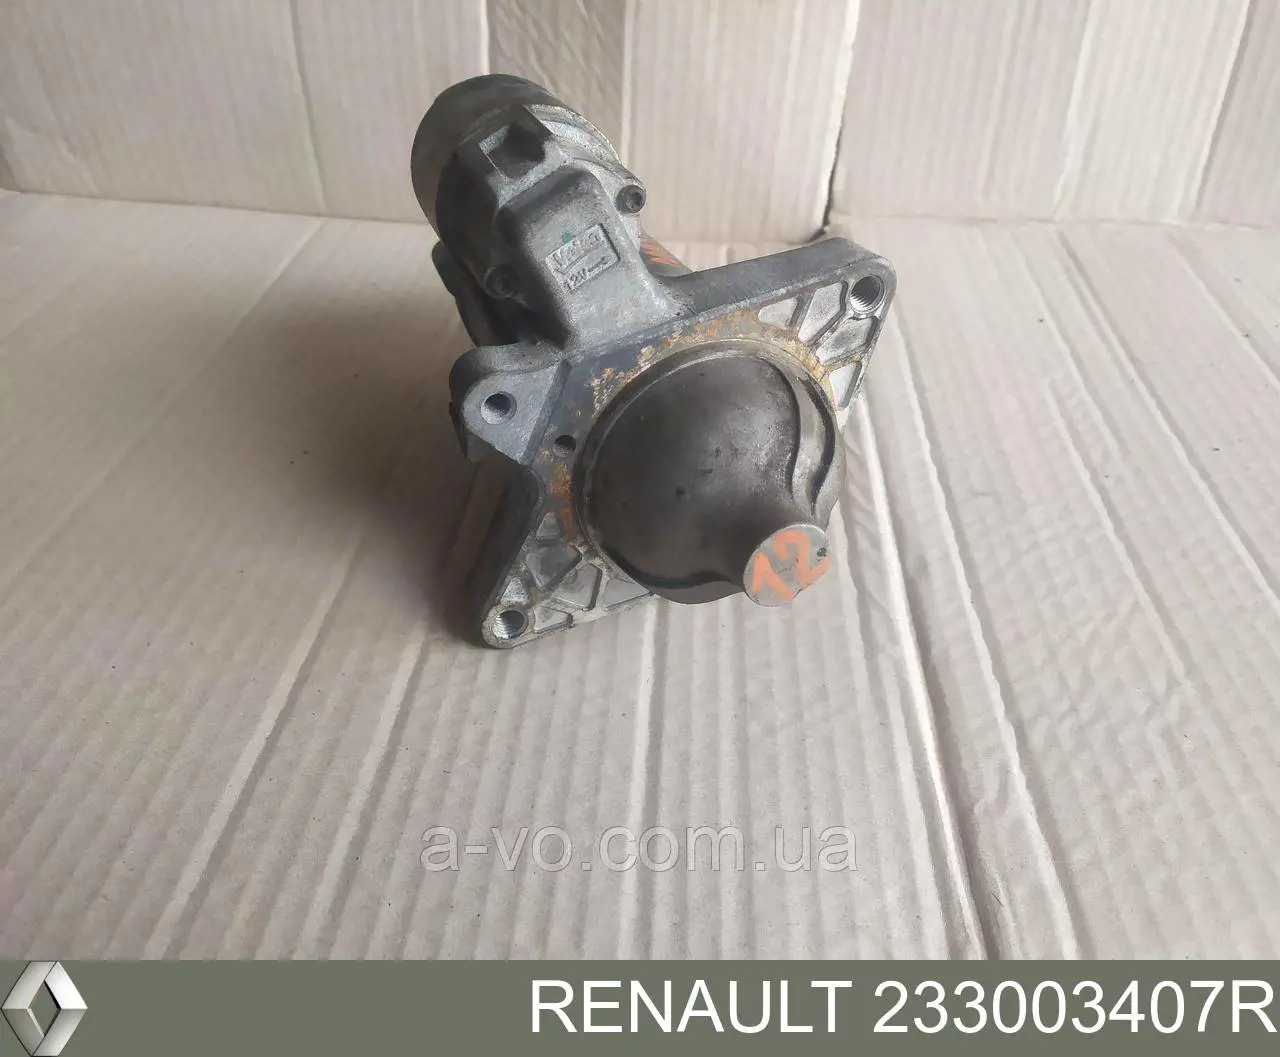 233003407R Renault (RVI) motor de arranque